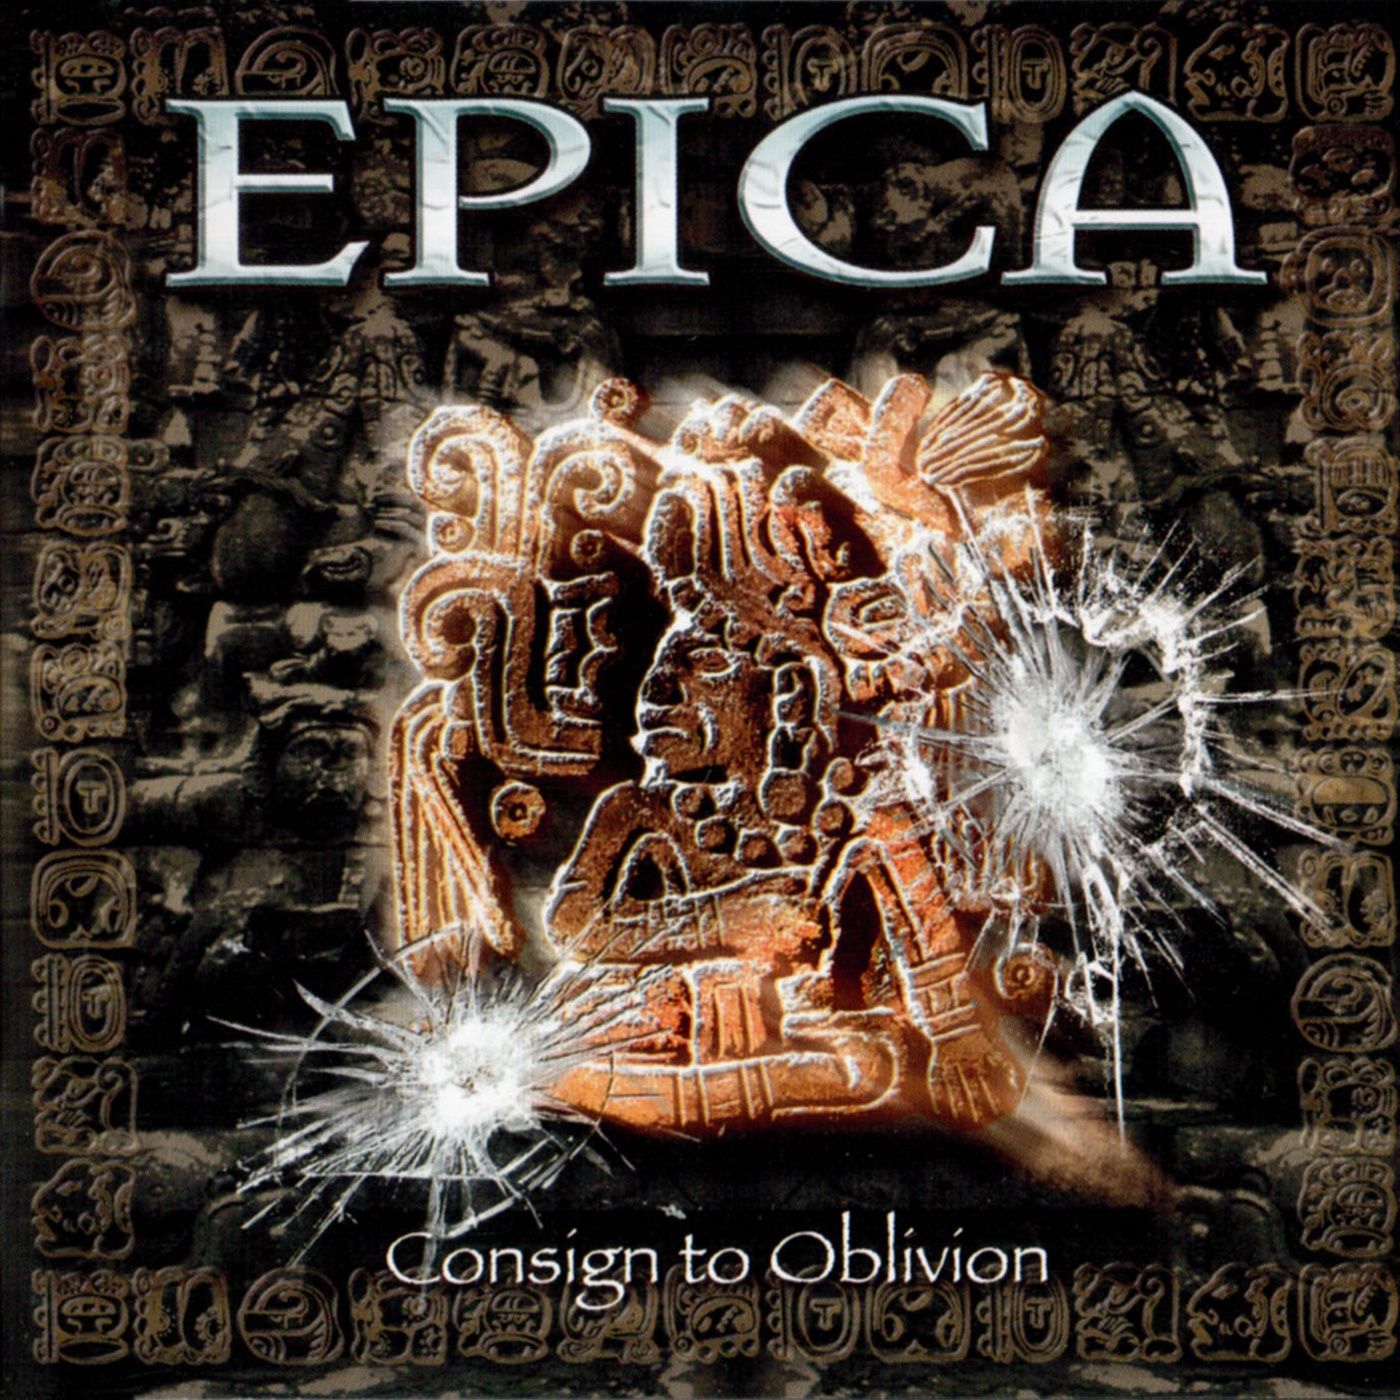 2005 Consign To Oblivion - Epica - Rockronología